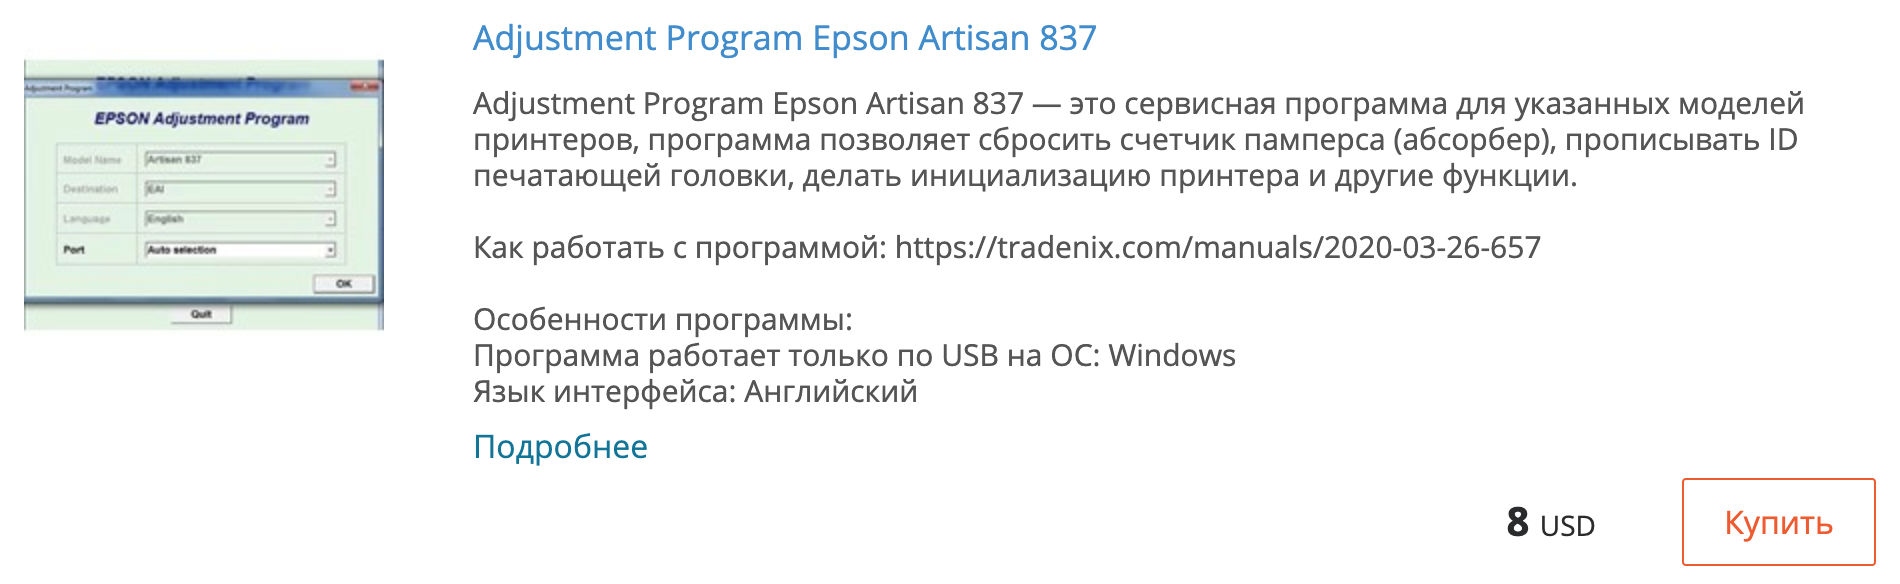 Купить Adjustment program Epson Artisan 837